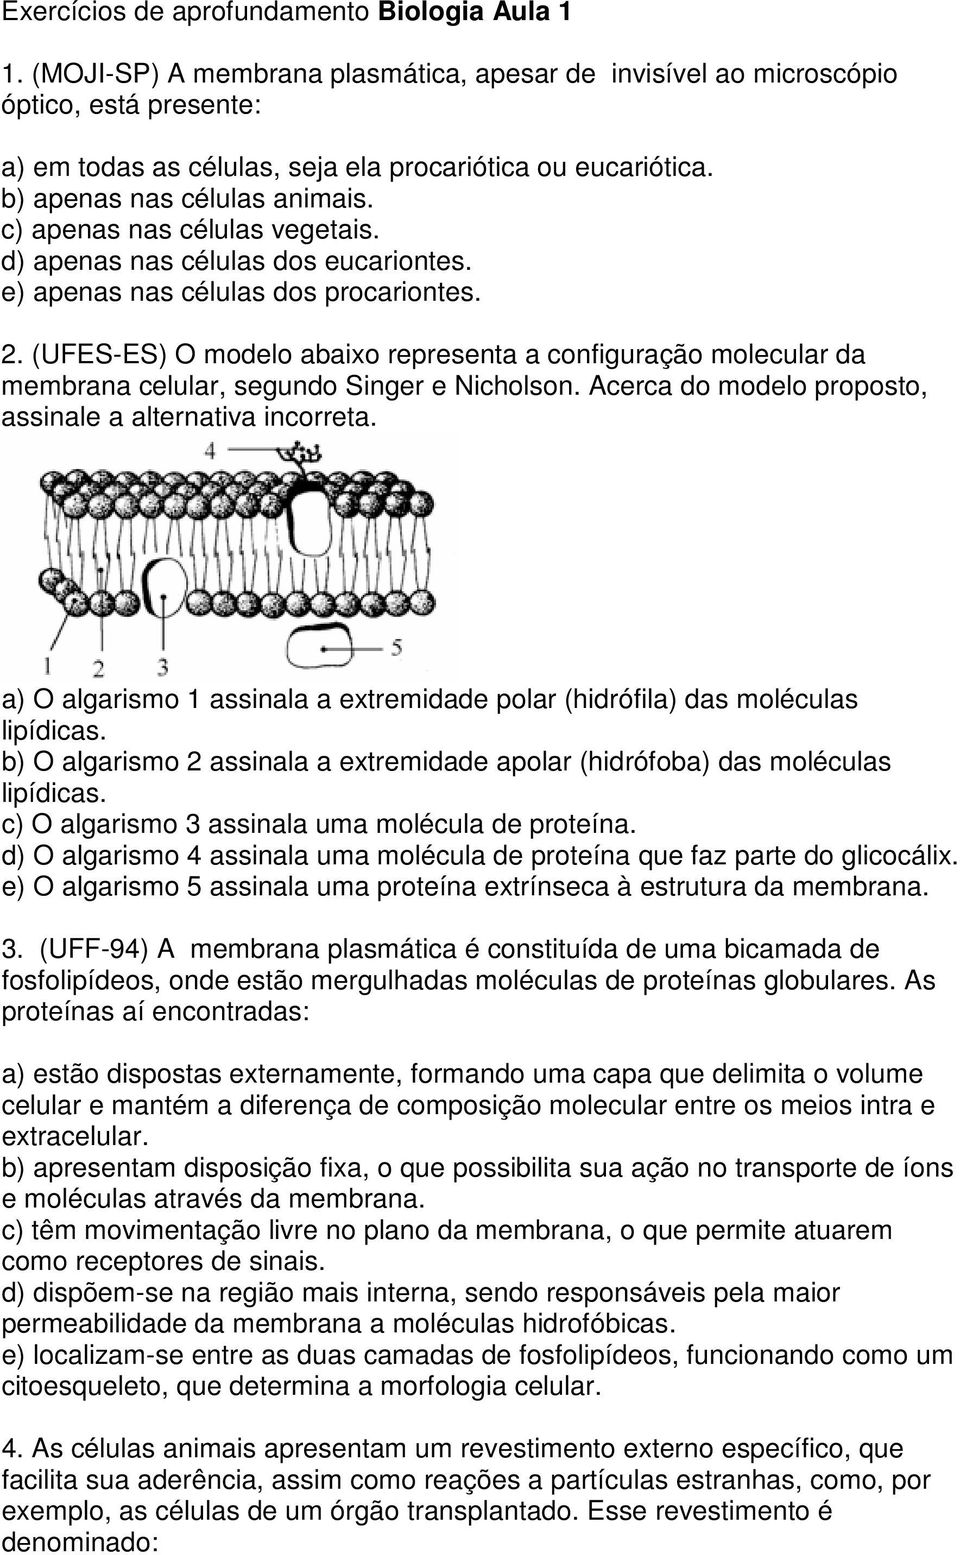 (UFES-ES O modelo abaixo representa a configuração molecular da membrana celular, segundo Singer e Nicholson. Acerca do modelo proposto, assinale a alternativa incorreta.